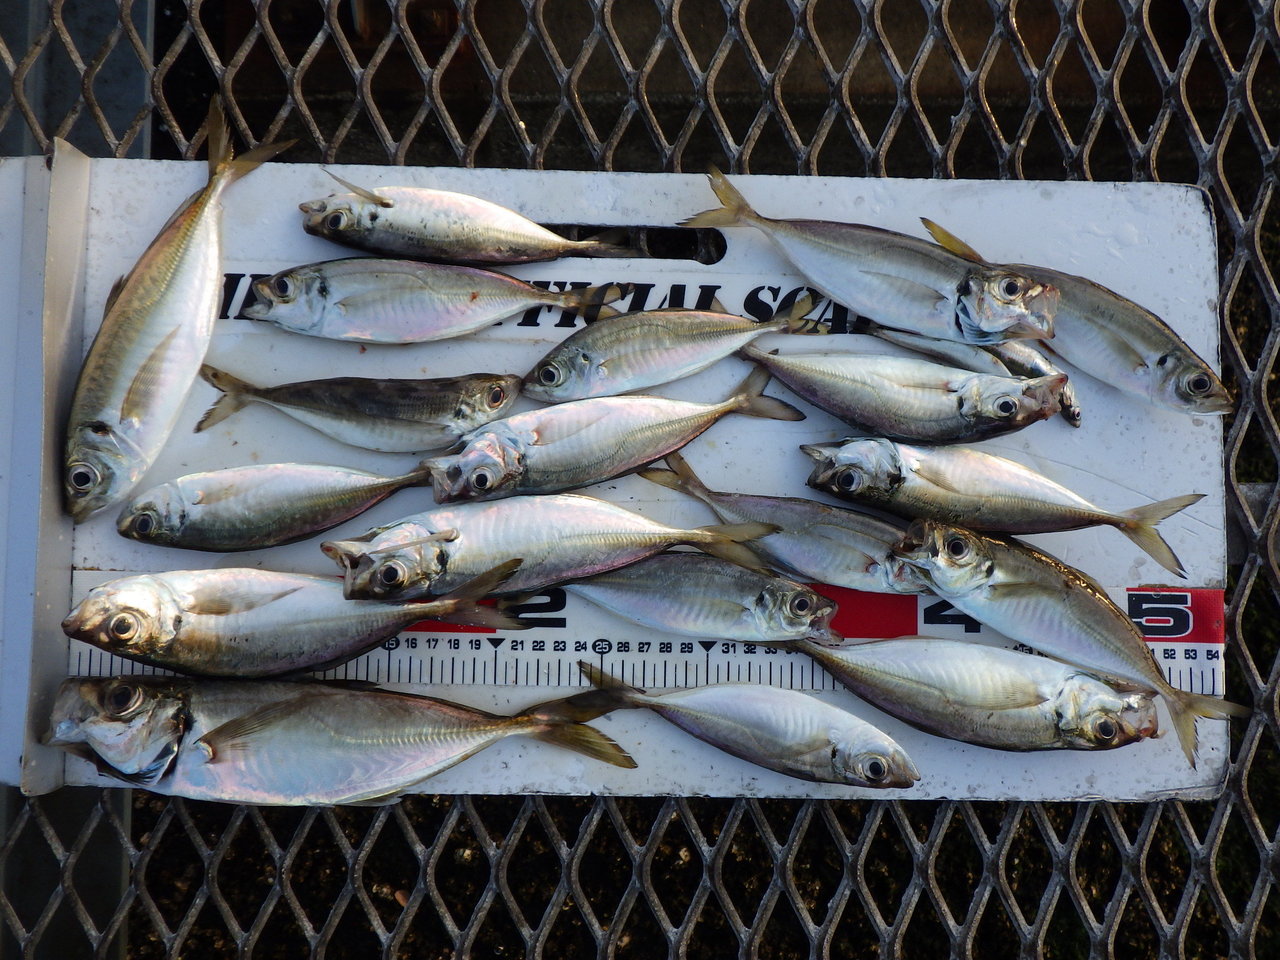 大黒海釣り施設の釣果と予約等について 21 4 21現在 趣味 釣り等 と暮らしのお役立ちブログ